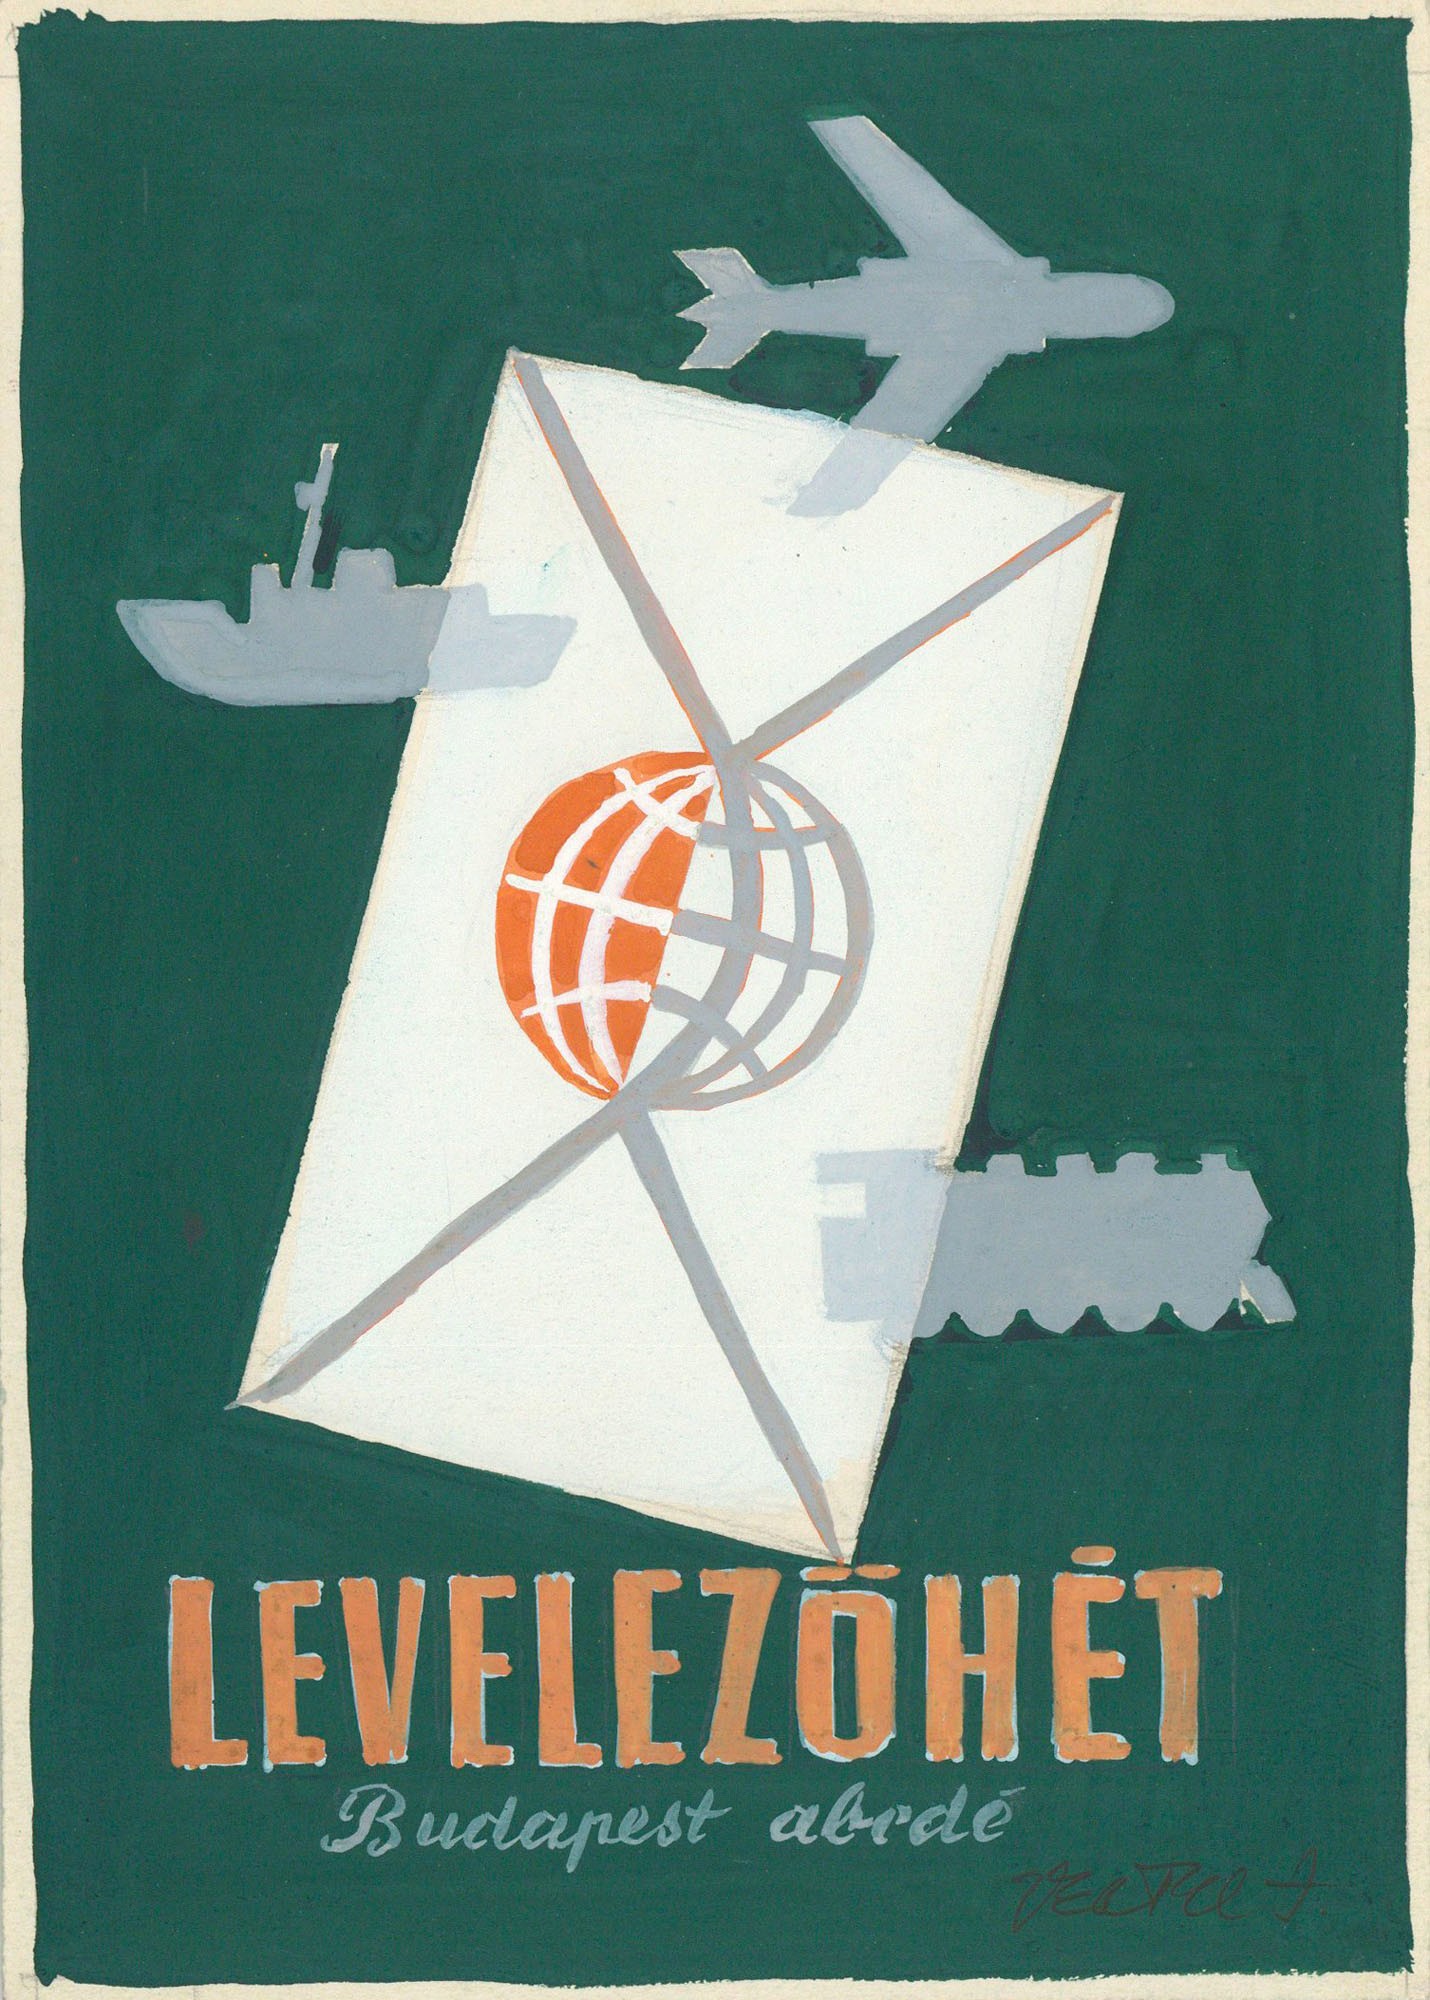 Postai programot népszerűsítő plakát vagy kiadvány terve. (Postamúzeum CC BY-NC-SA)